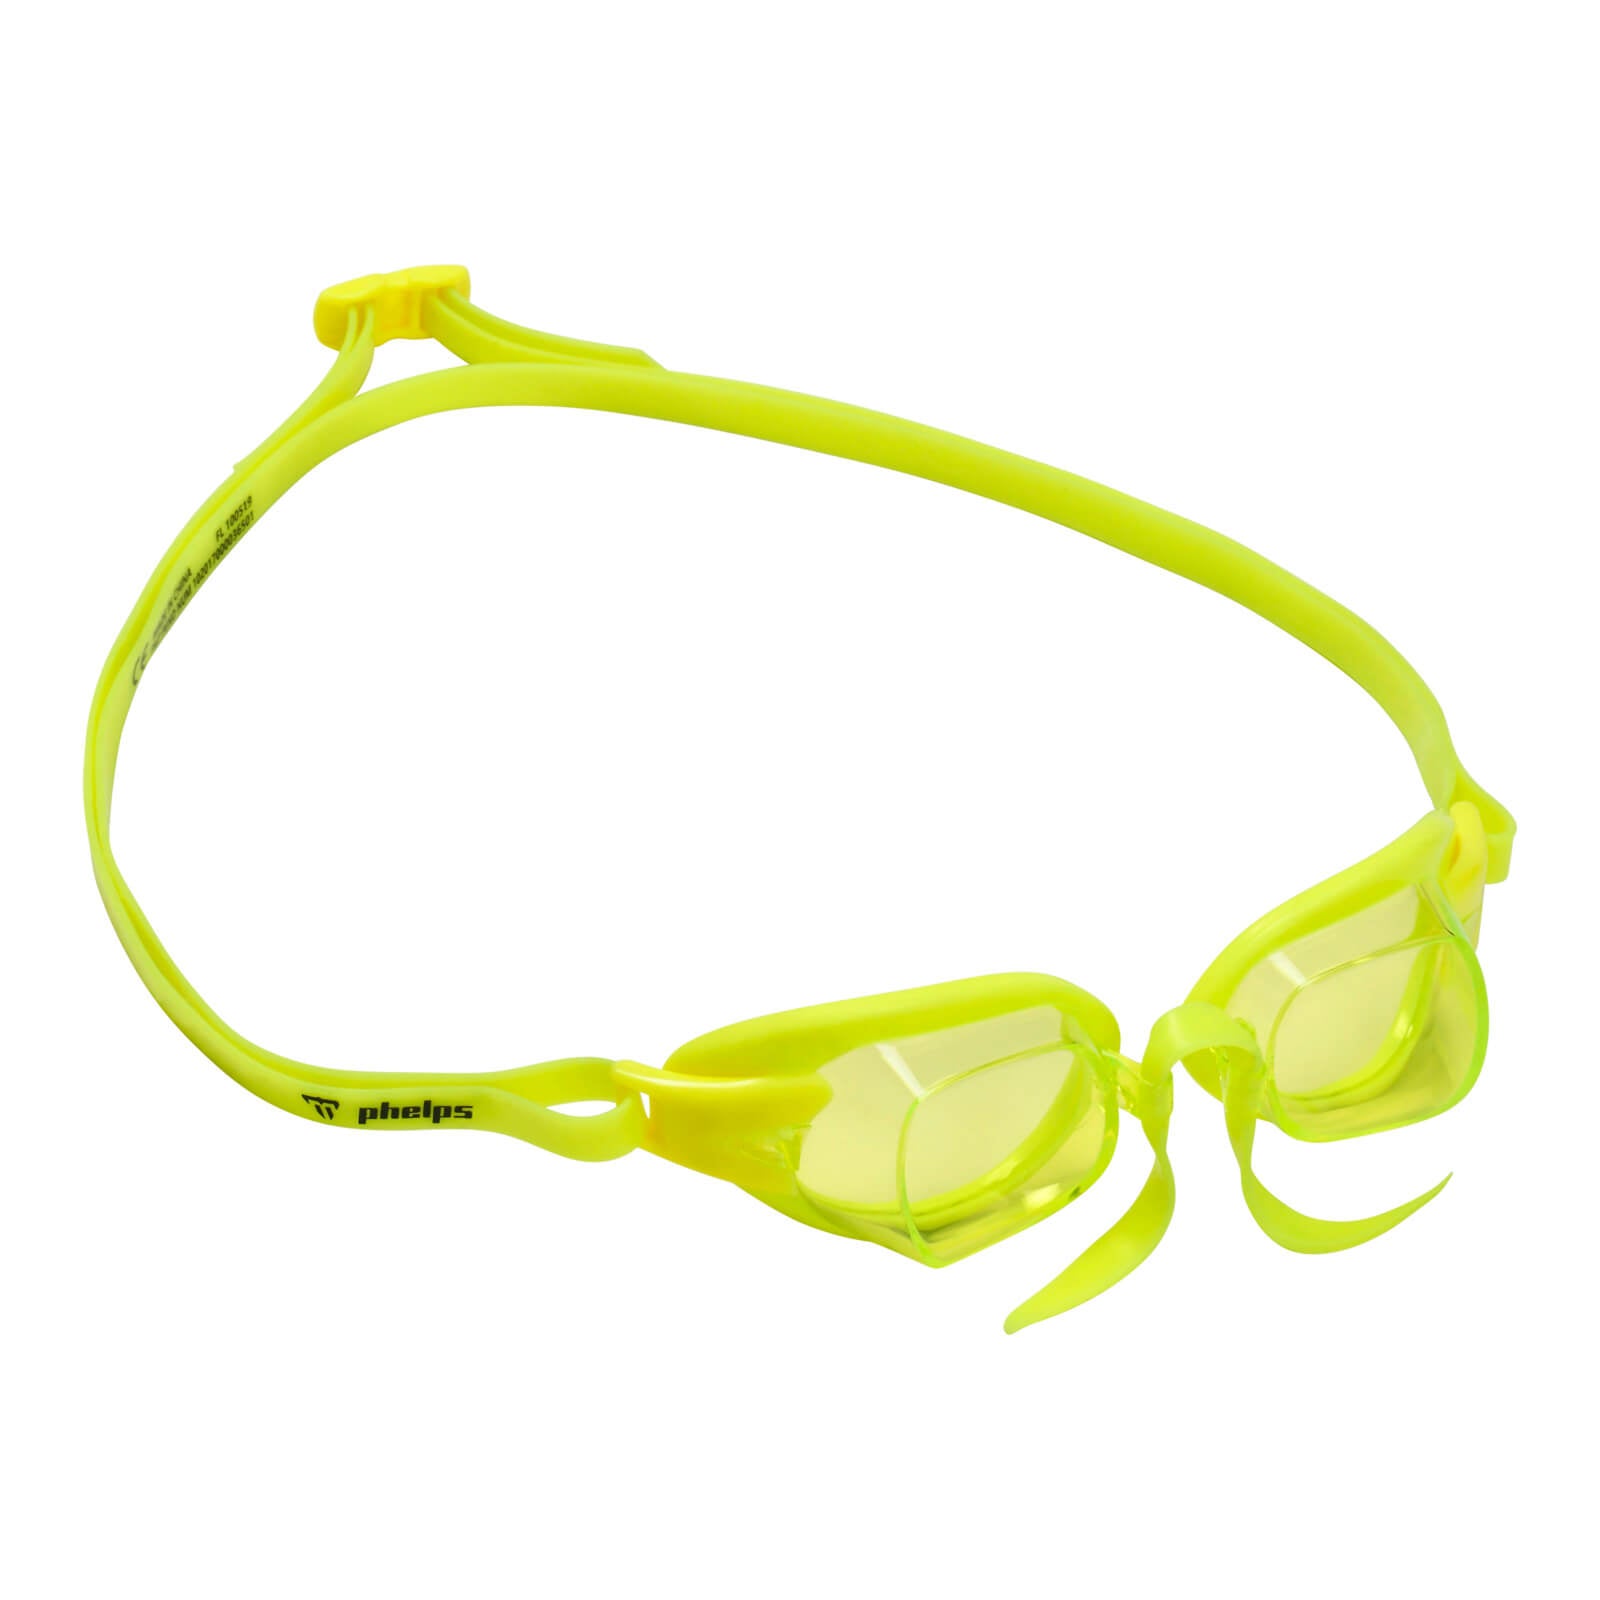 Phelps Chronos Men's Swimming Goggles Yellow Yellow